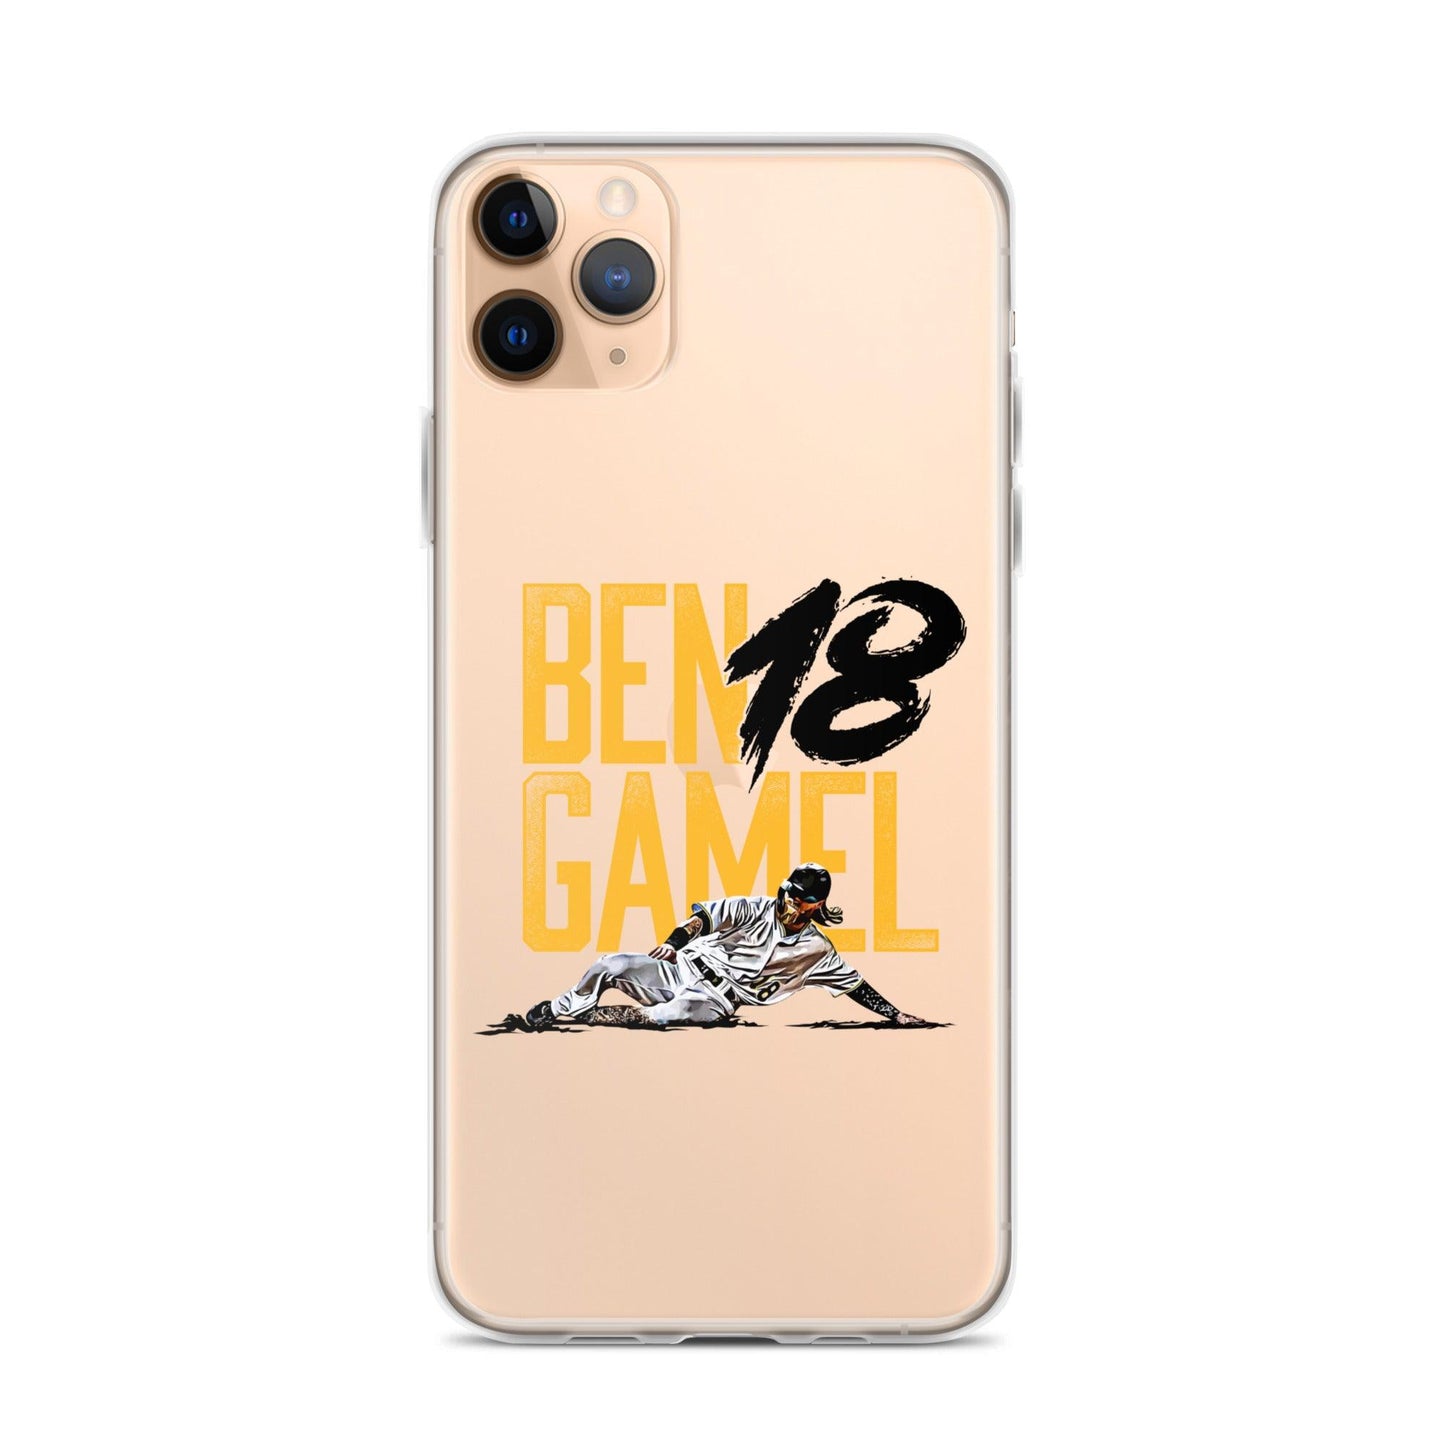 Ben Gamel "Hustle" iPhone Case - Fan Arch